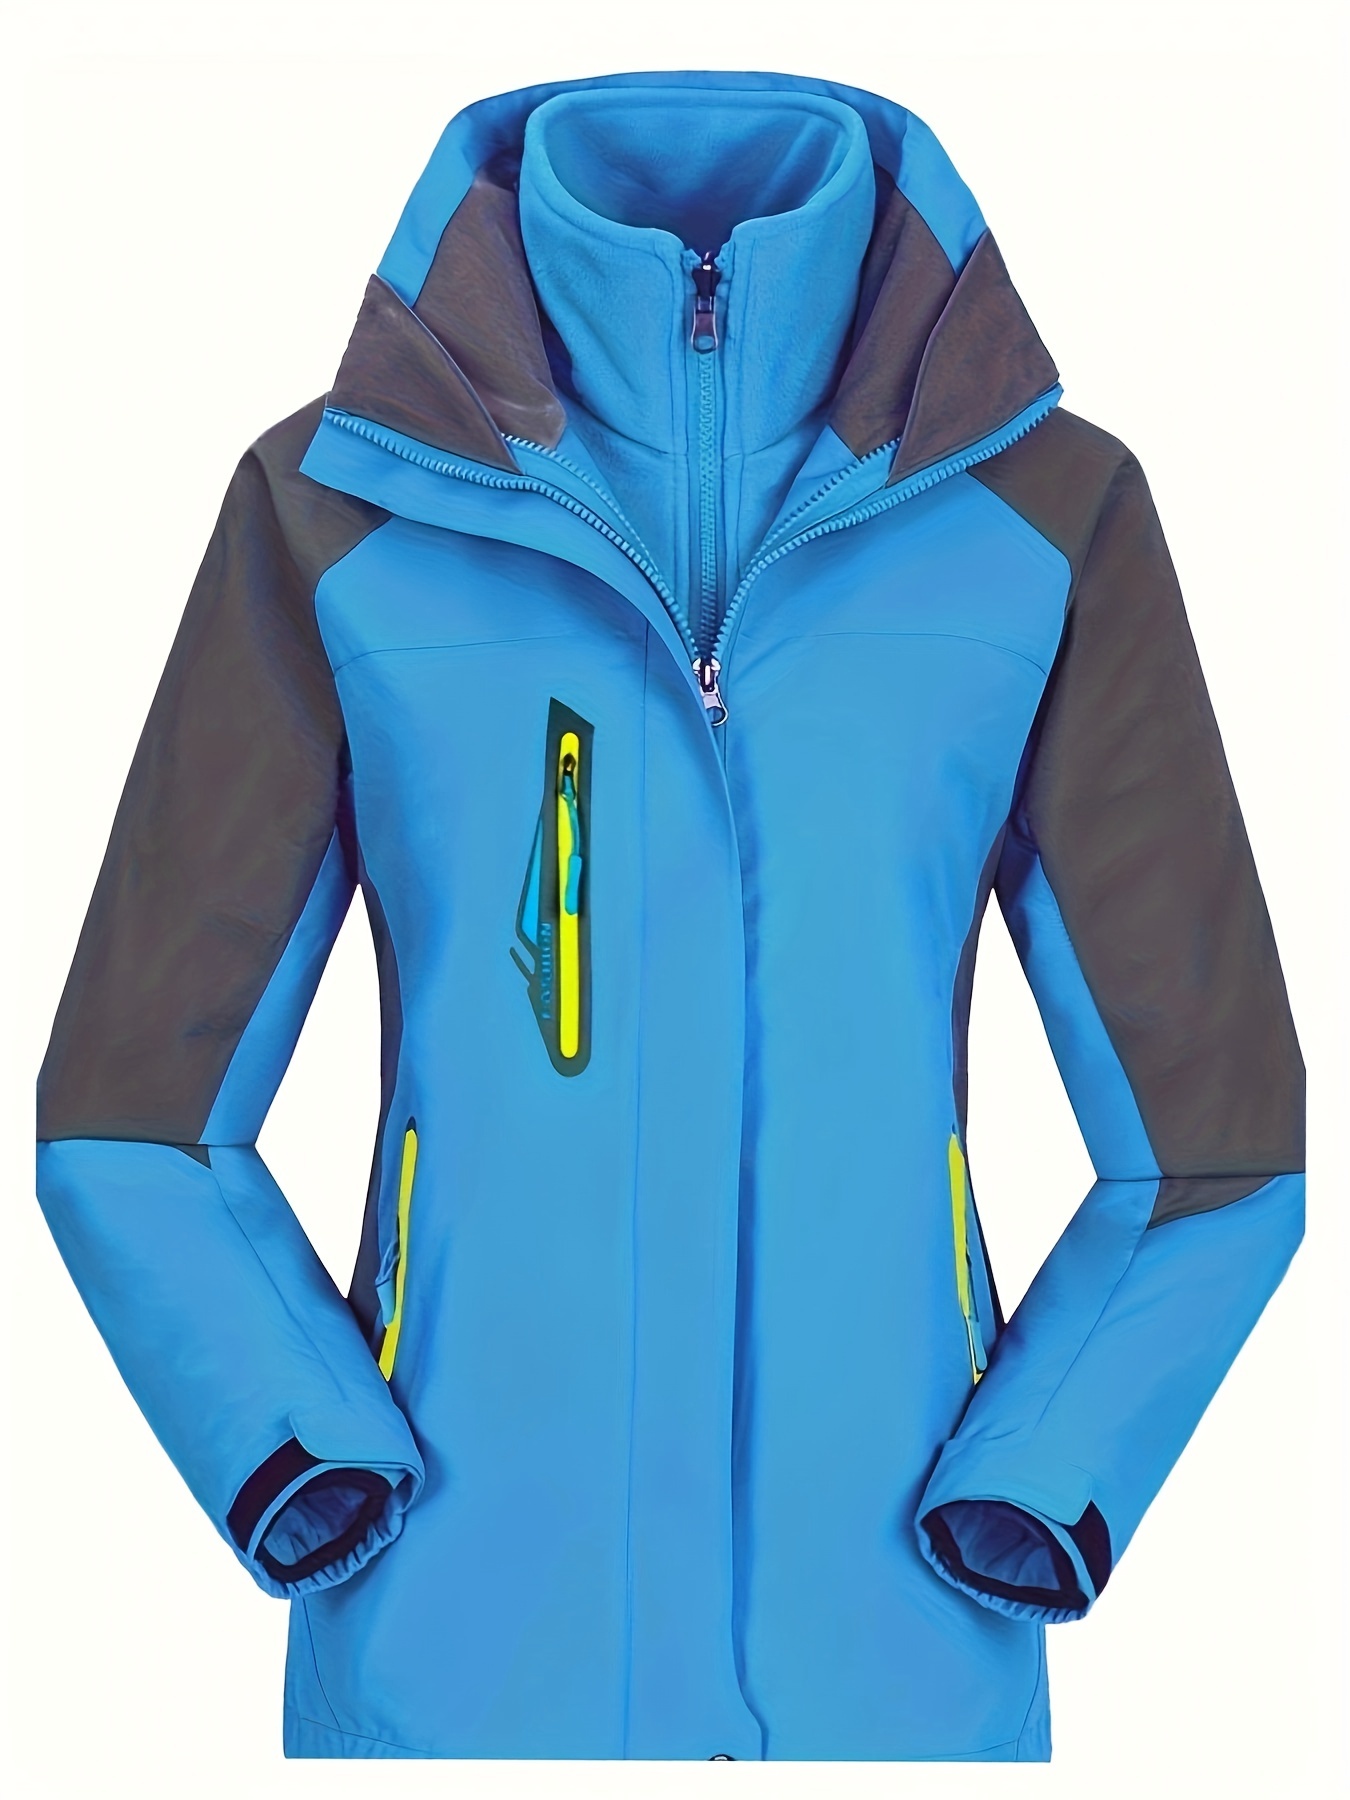 JUST BUY IT Unisex 3-Layer Inner Fleece Jacket Outdoor Waterproof Sport  Warm Coat+Sweater 